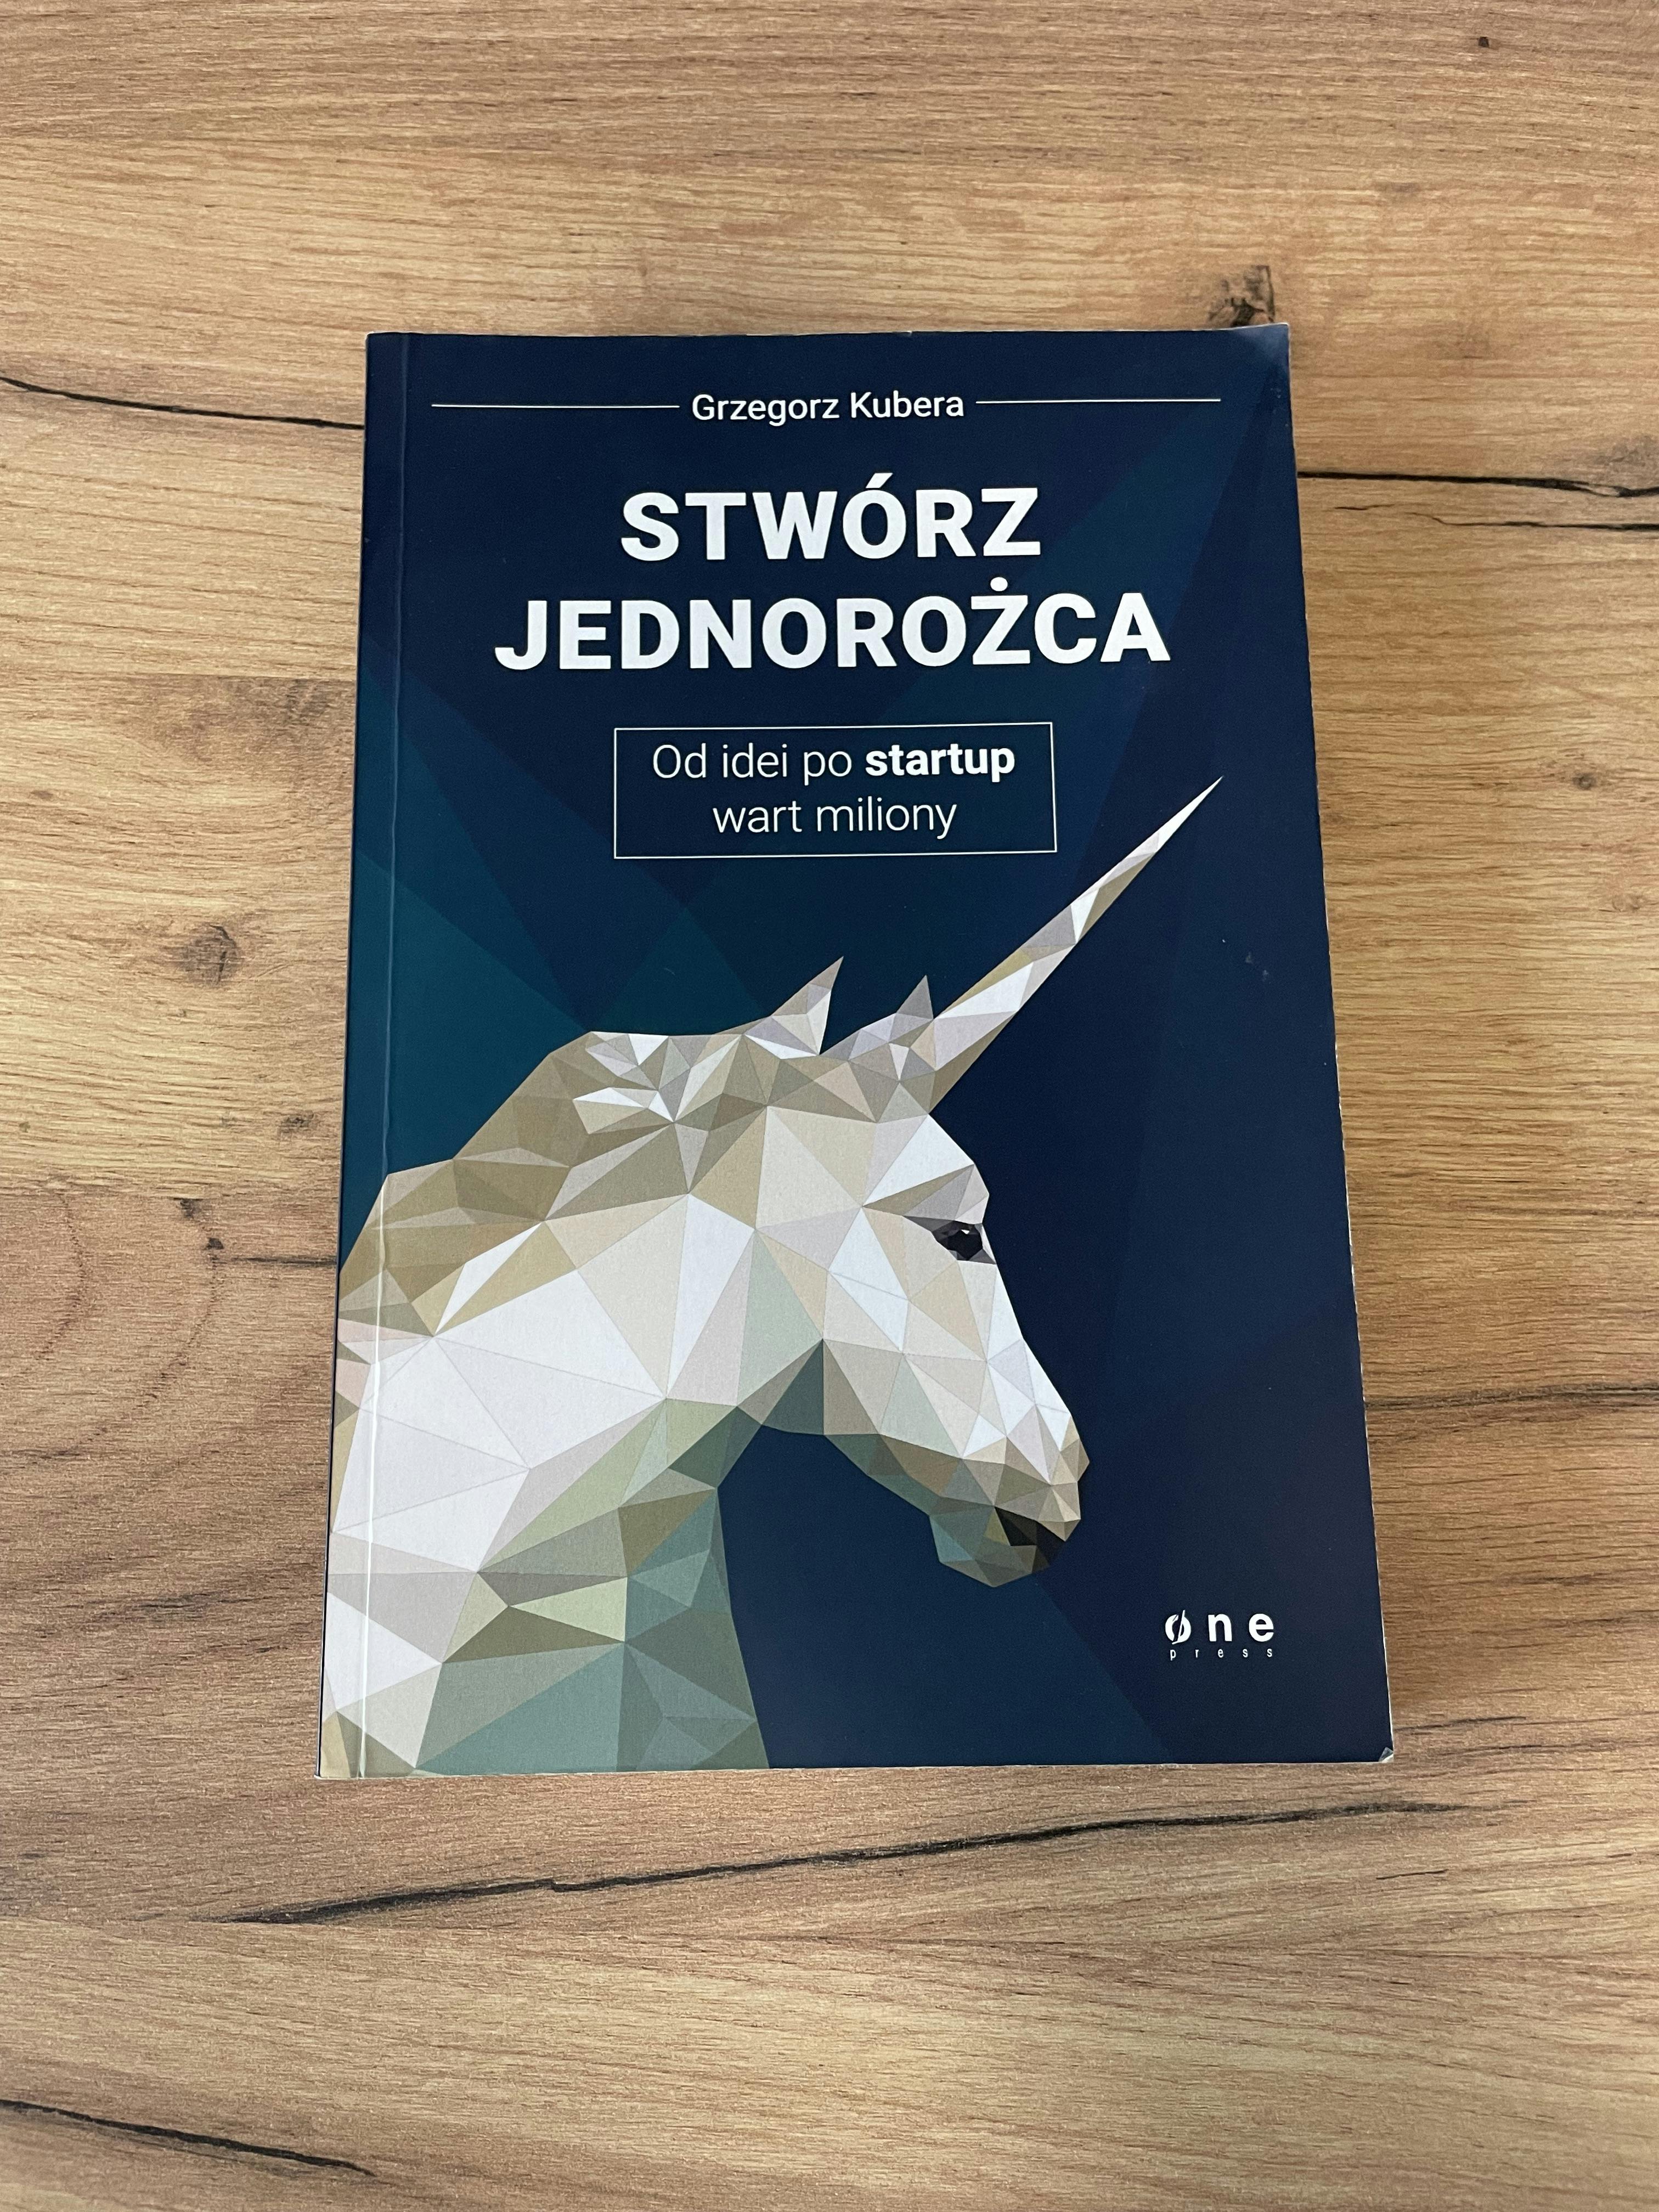 Primary picture of Książka "Stwórz jednorożca. Od idei po startup wart miliony". Autor: Grzegorz Kubera